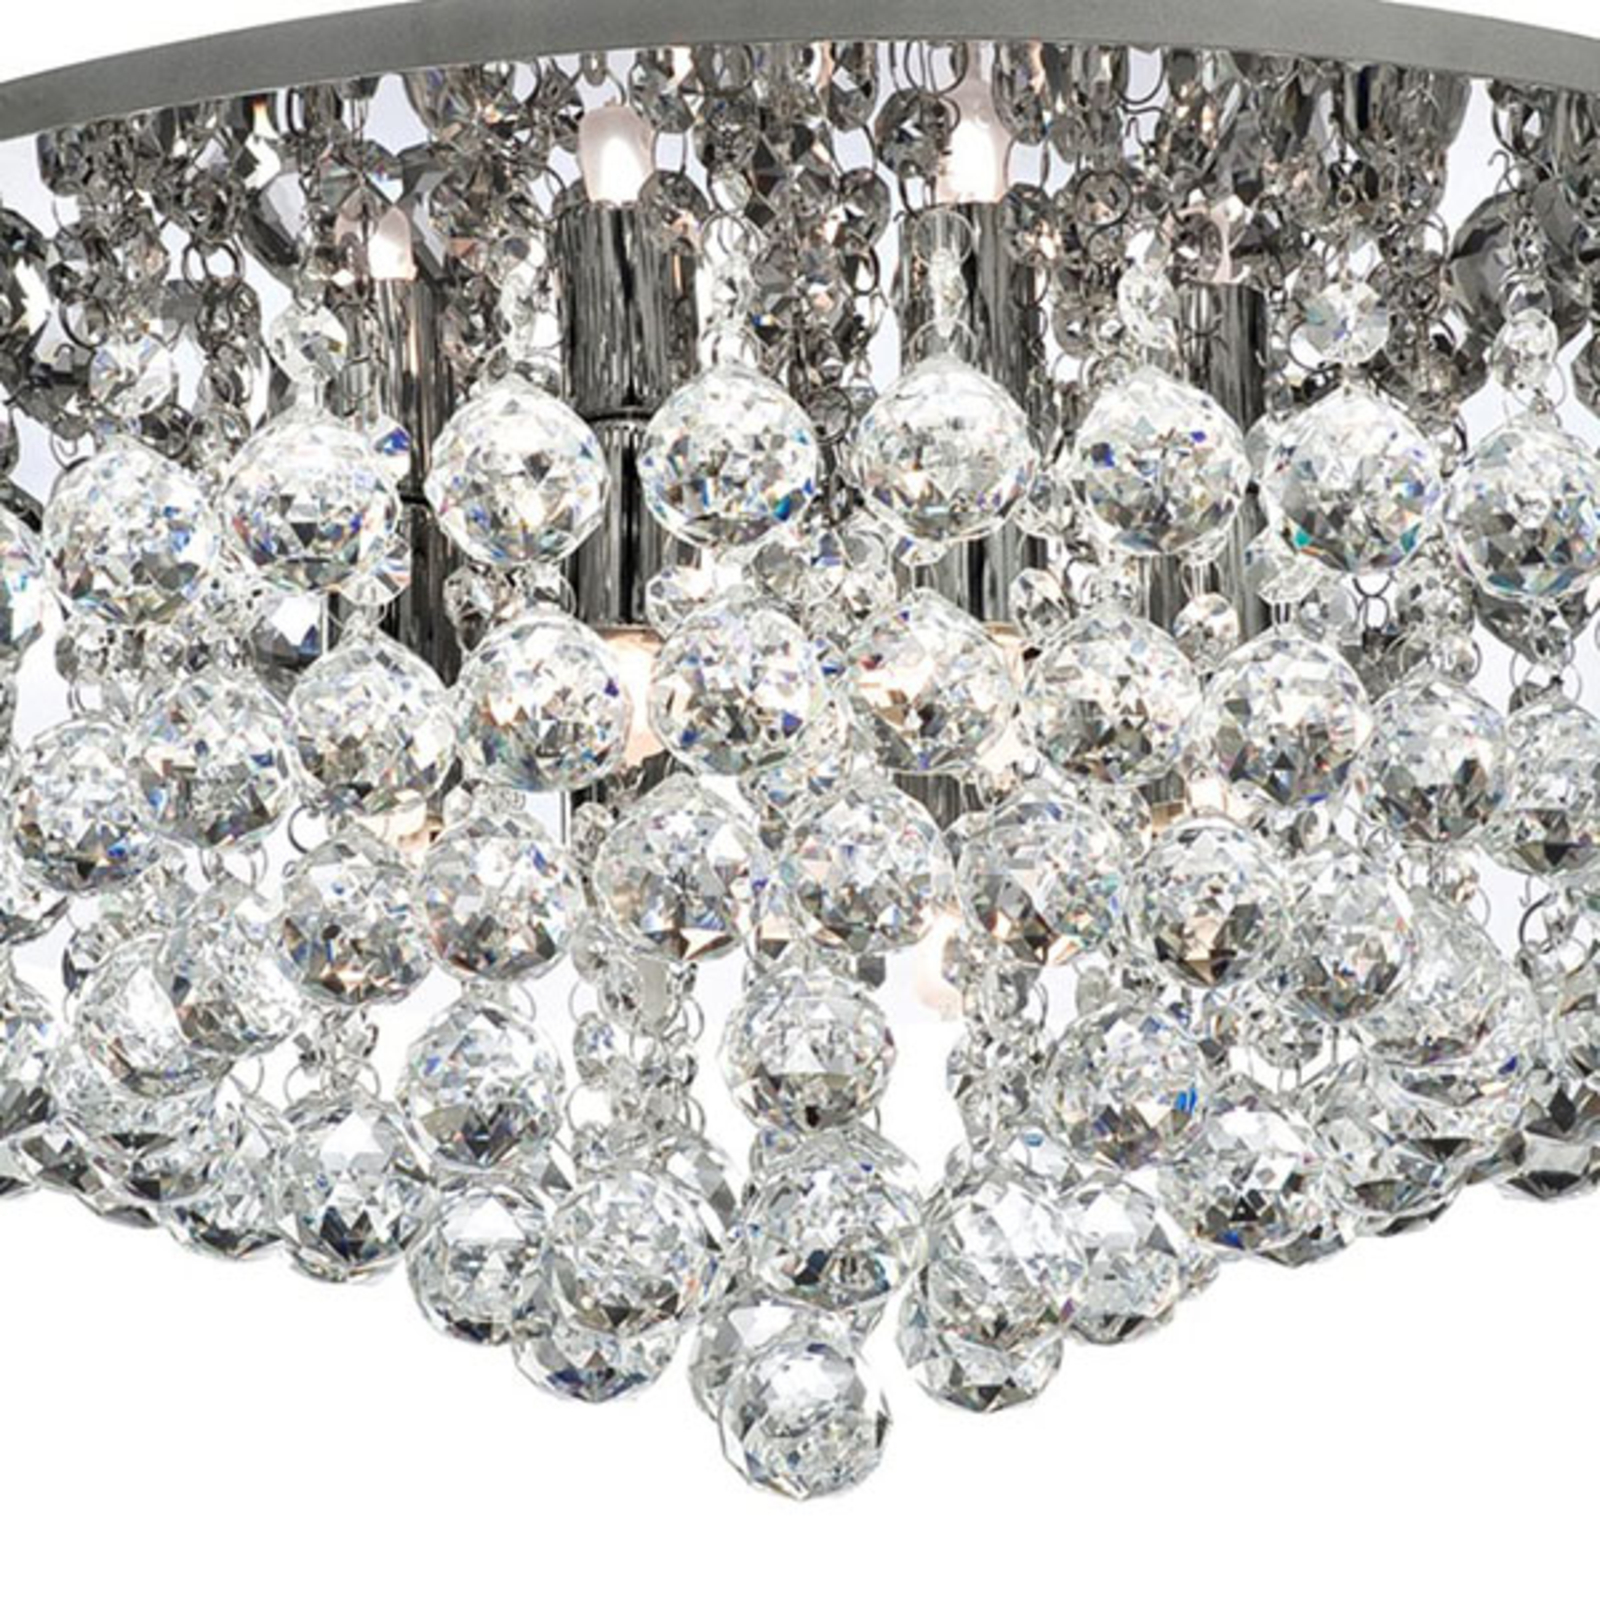 Hanna ceiling chrome glass crystal globes 55 cm